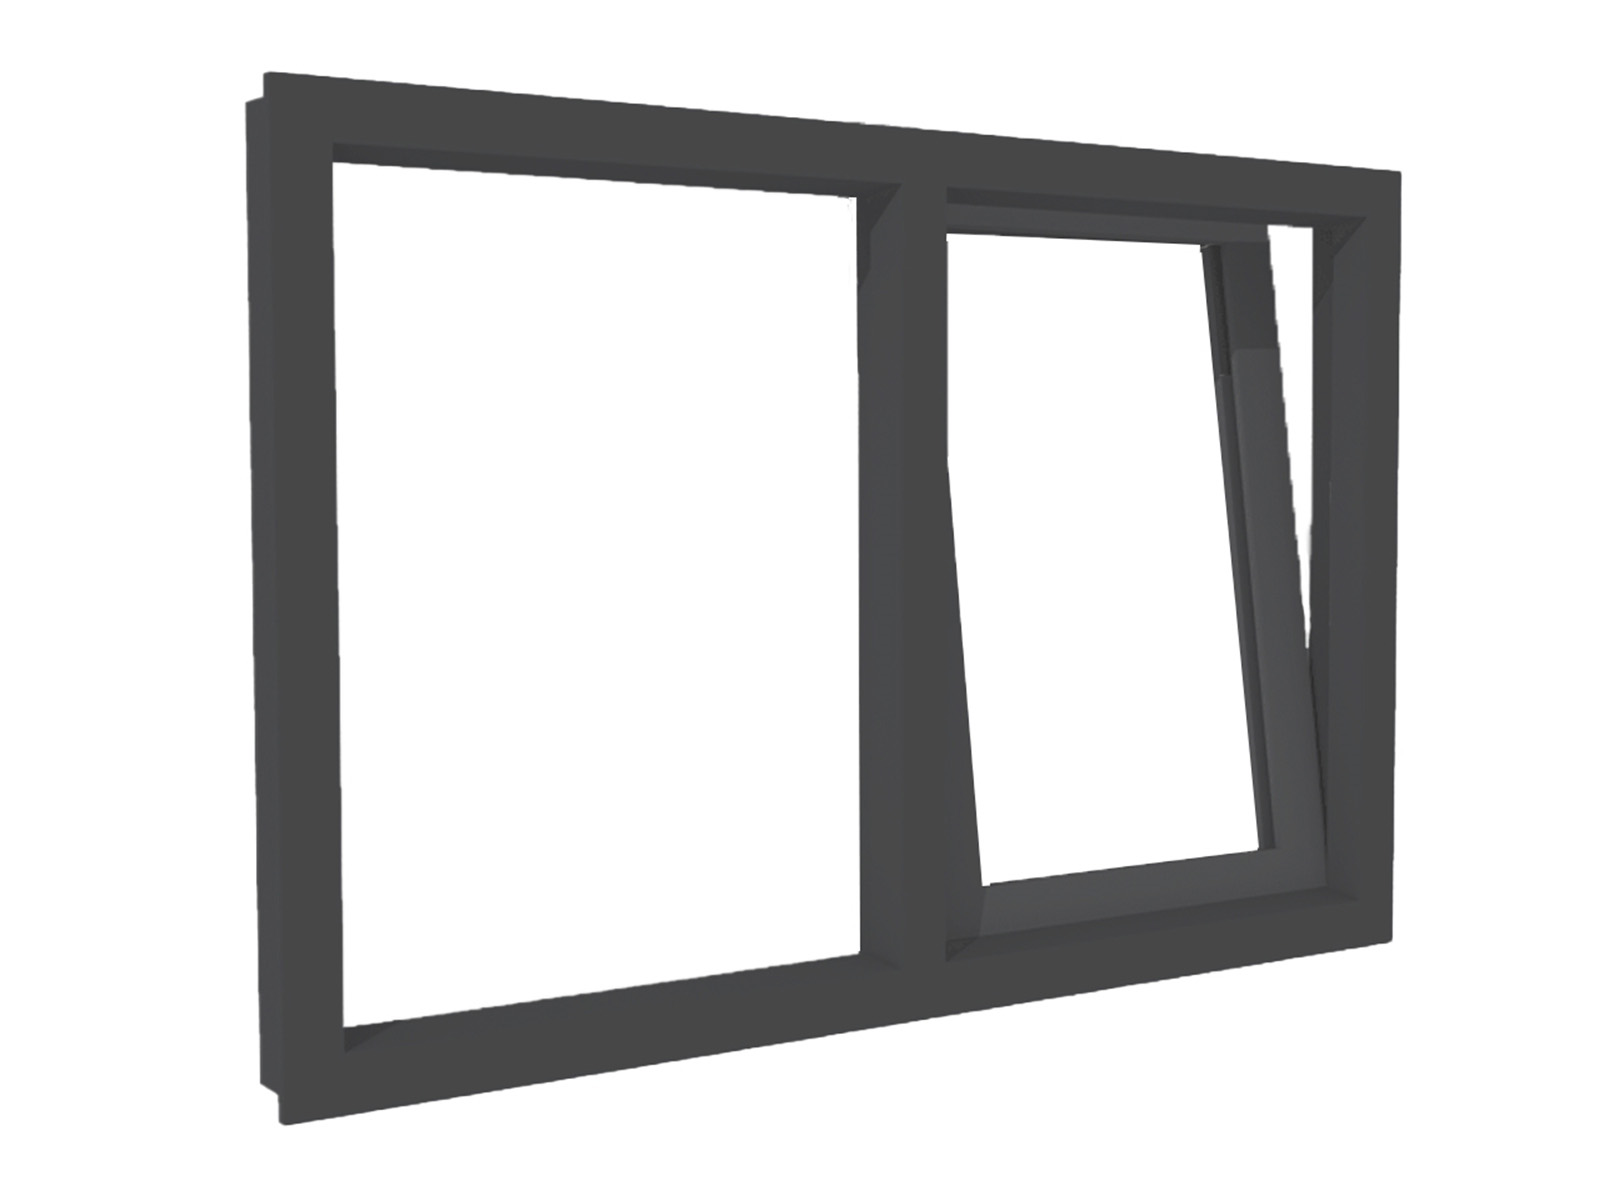 Kunststof raamkozijn, 1x draai/kiep raam en 1x vast raam, isolatieglas, Antraciet houtnerf, 2 meter